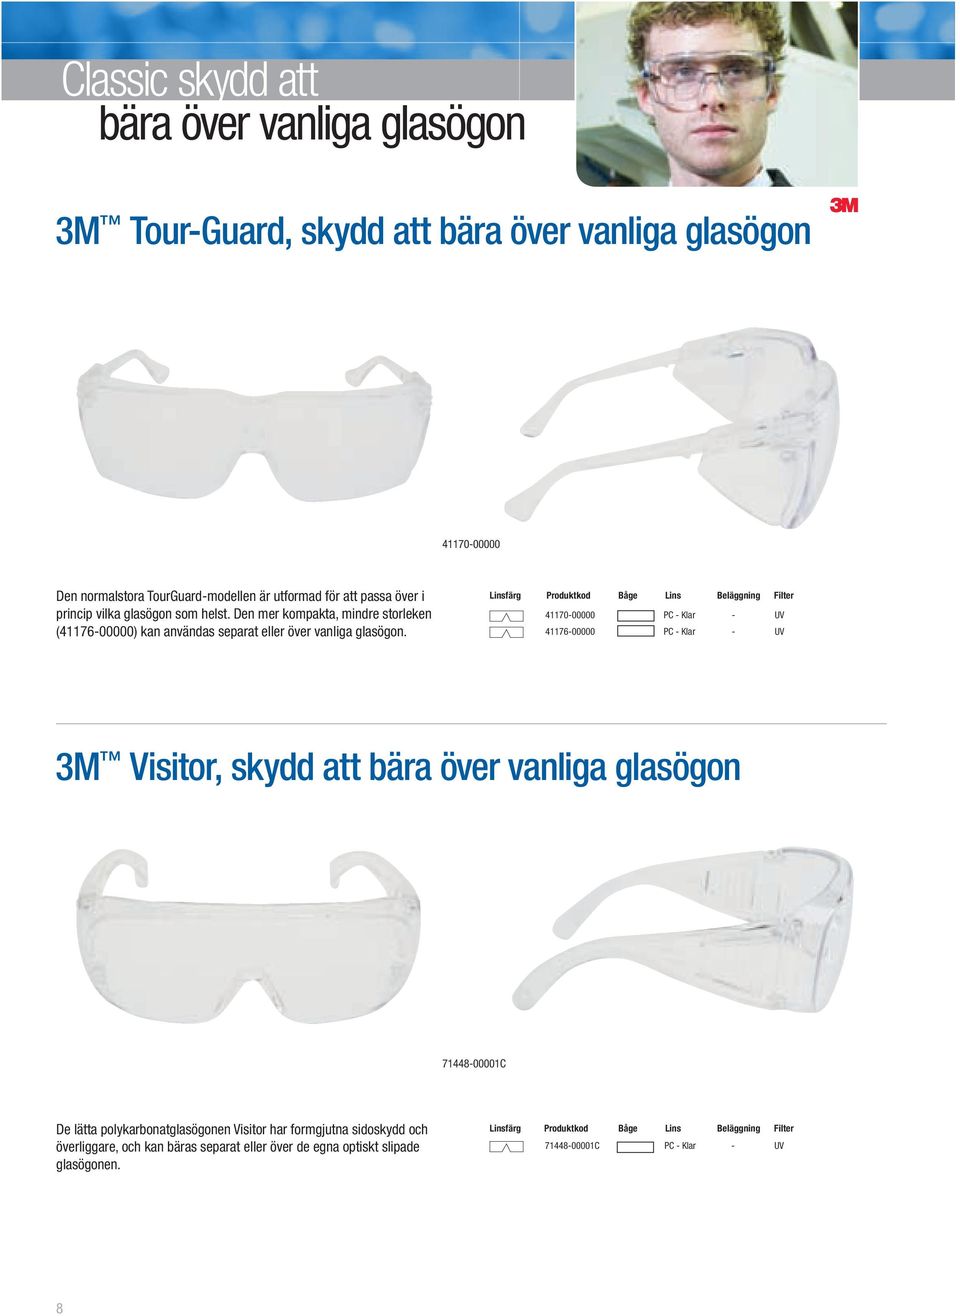 Den mer kompakta, mindre storleken (41176-00000) kan användas separat eller över vanliga glasögon.